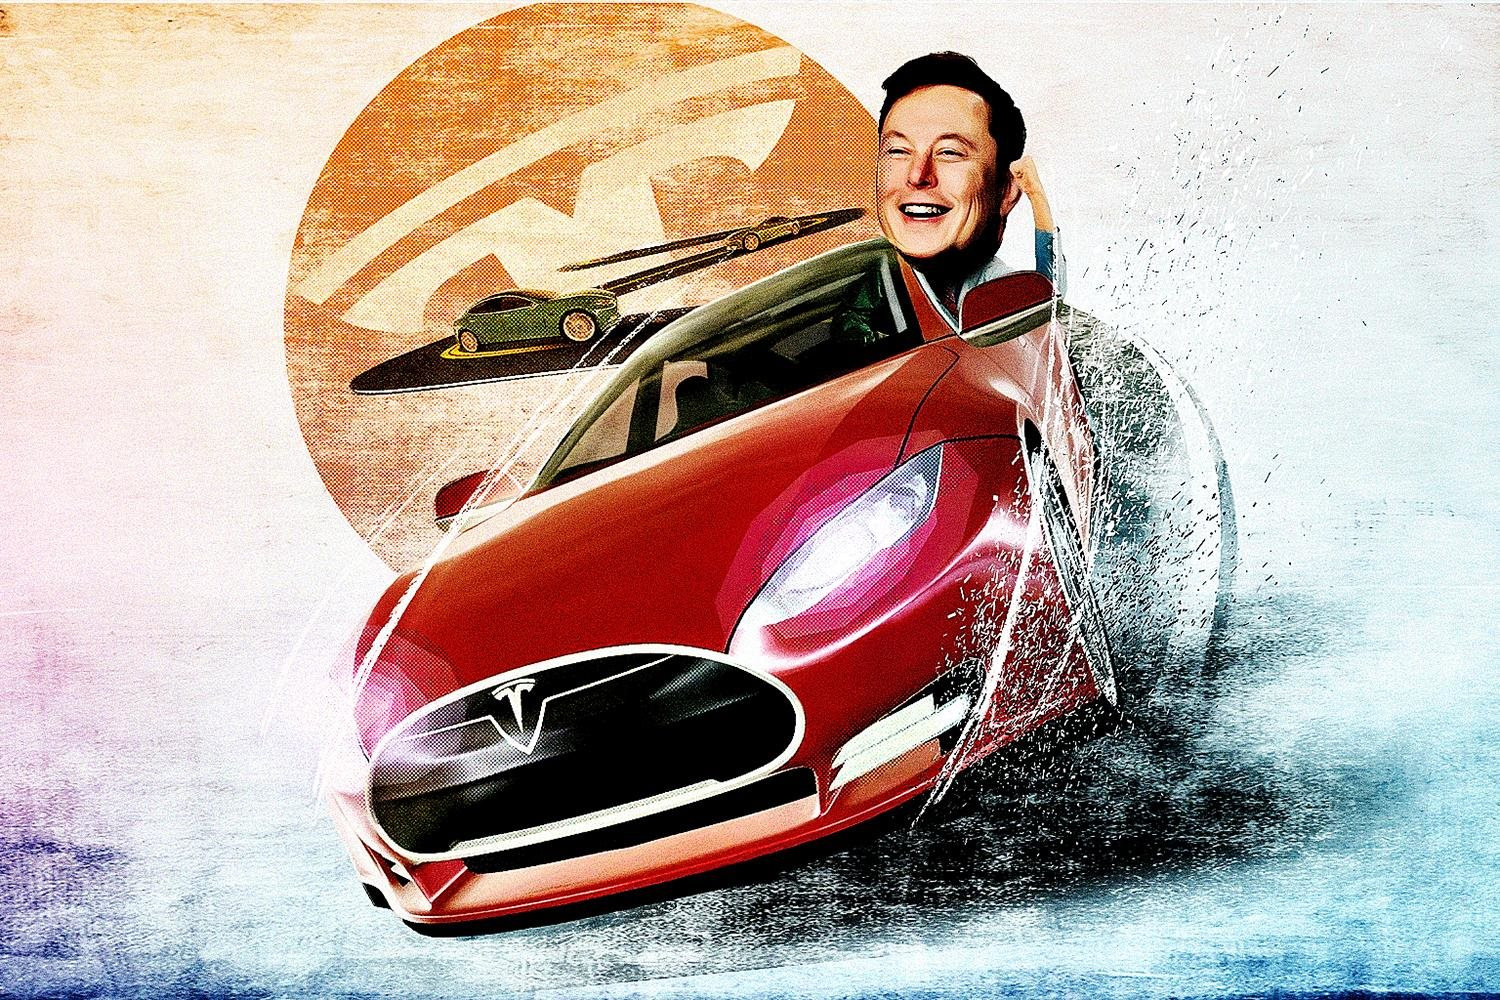 3 lớp tiểu xảo trong canh bạc thế kỷ 21 của Elon Musk: Chiến lược giữ dòng xe đắt đỏ nhất dù chúng chỉ chiếm 5% doanh số, chờ đợi đối thủ sập bẫy